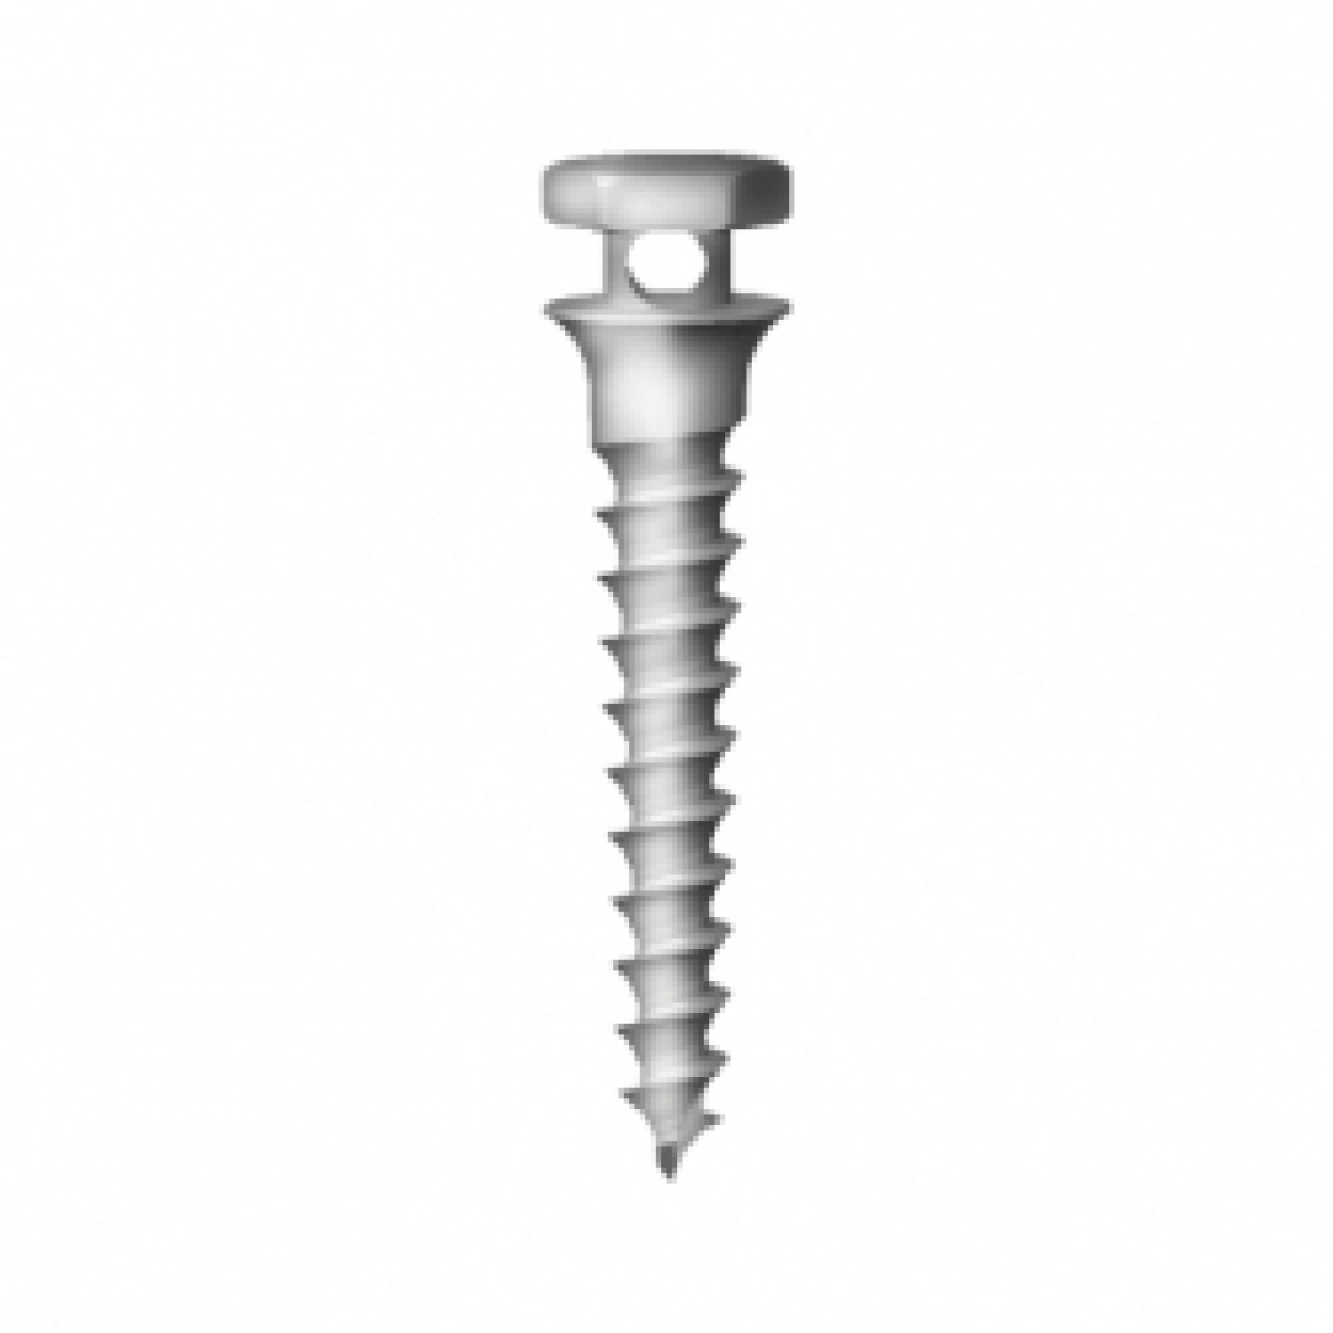 OS-S-14-010 Стоматологический ортодонтический винт для эластичной тяги и проволоки, диаметр 1.4 мм длина 10 мм, Mr.Curette Tech, Южная Корея